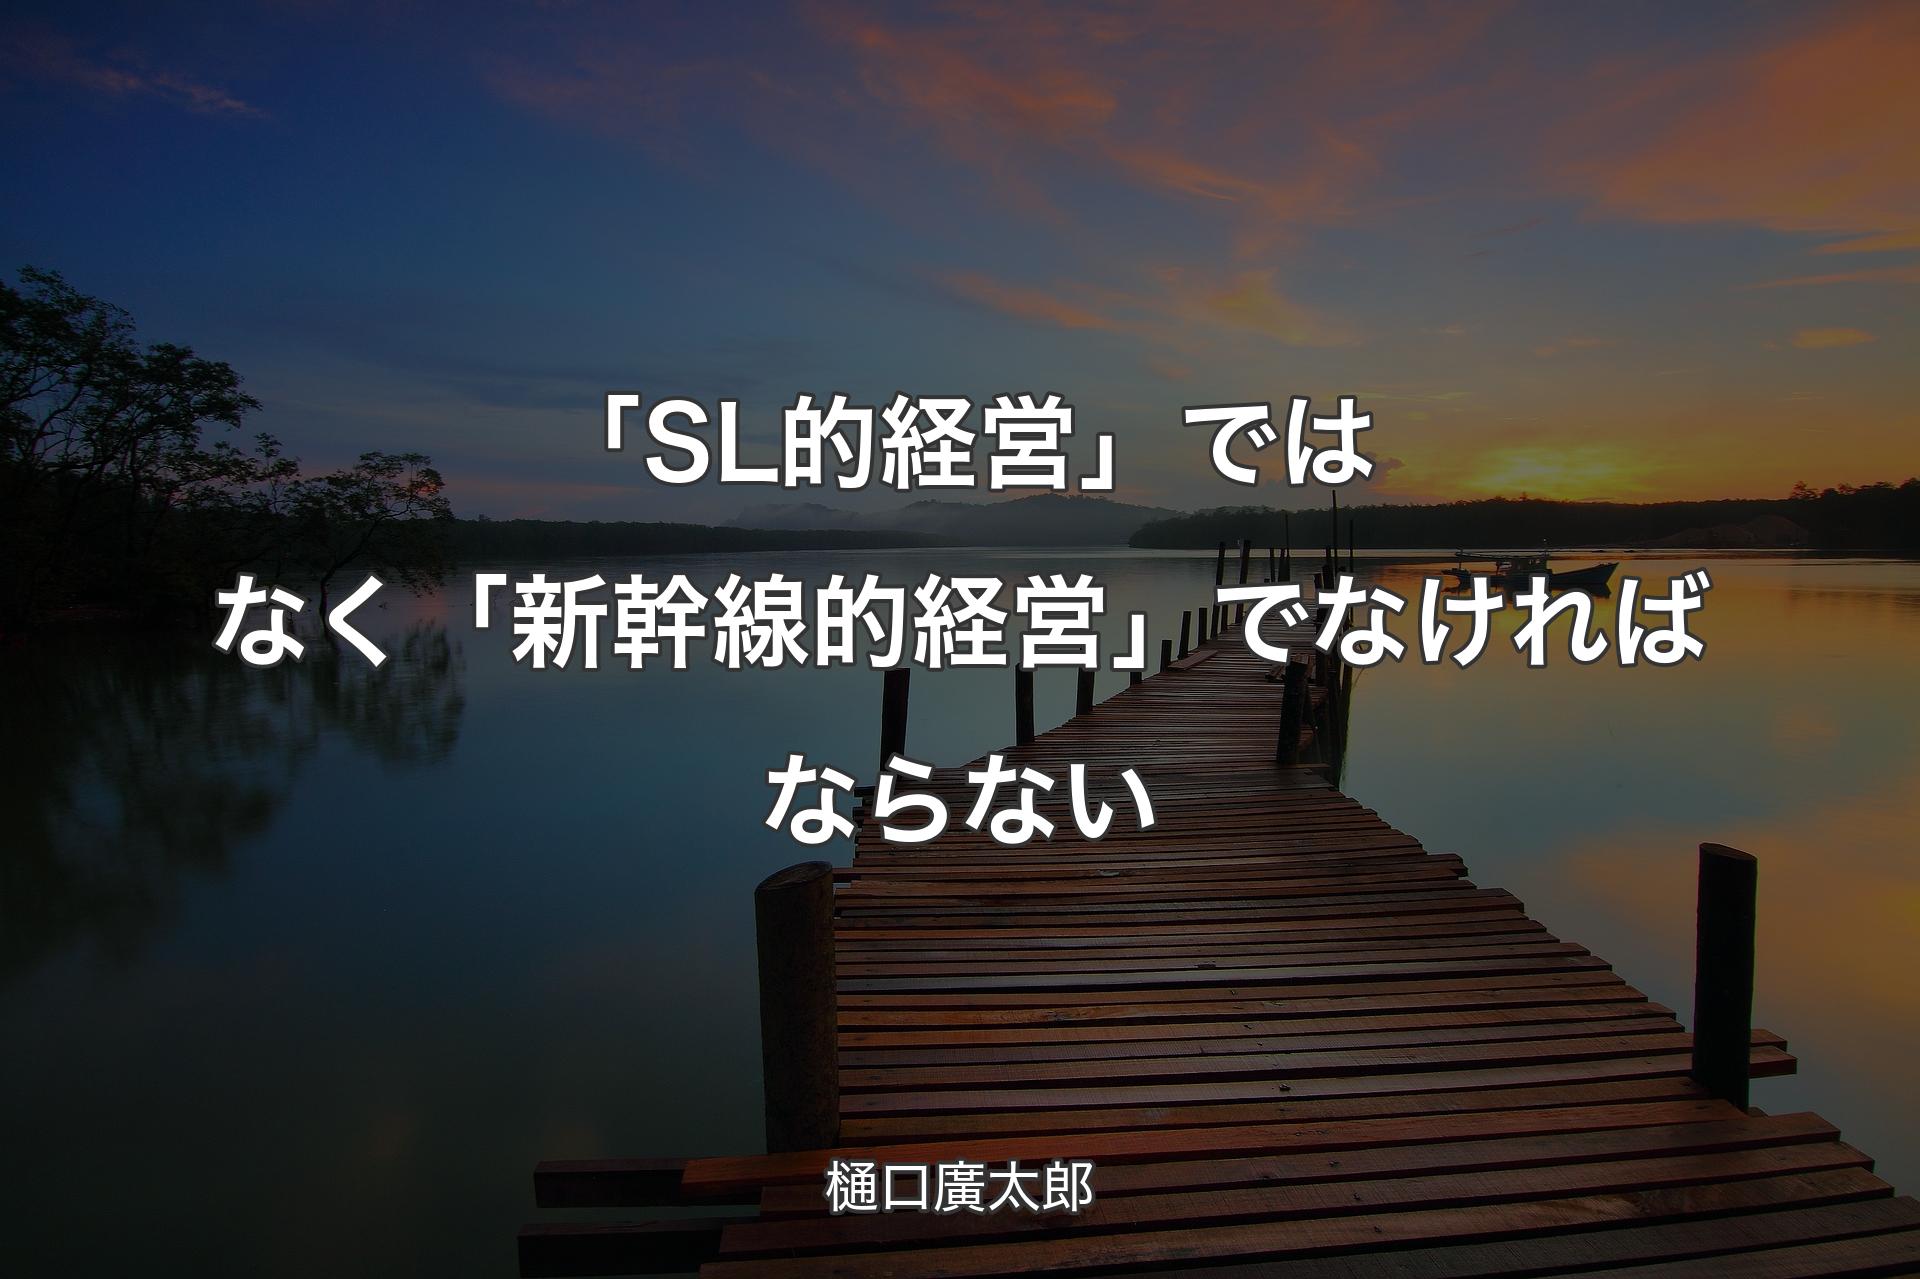 「SL的経営」ではなく「新幹線的経営」でなければならない - 樋口廣太郎